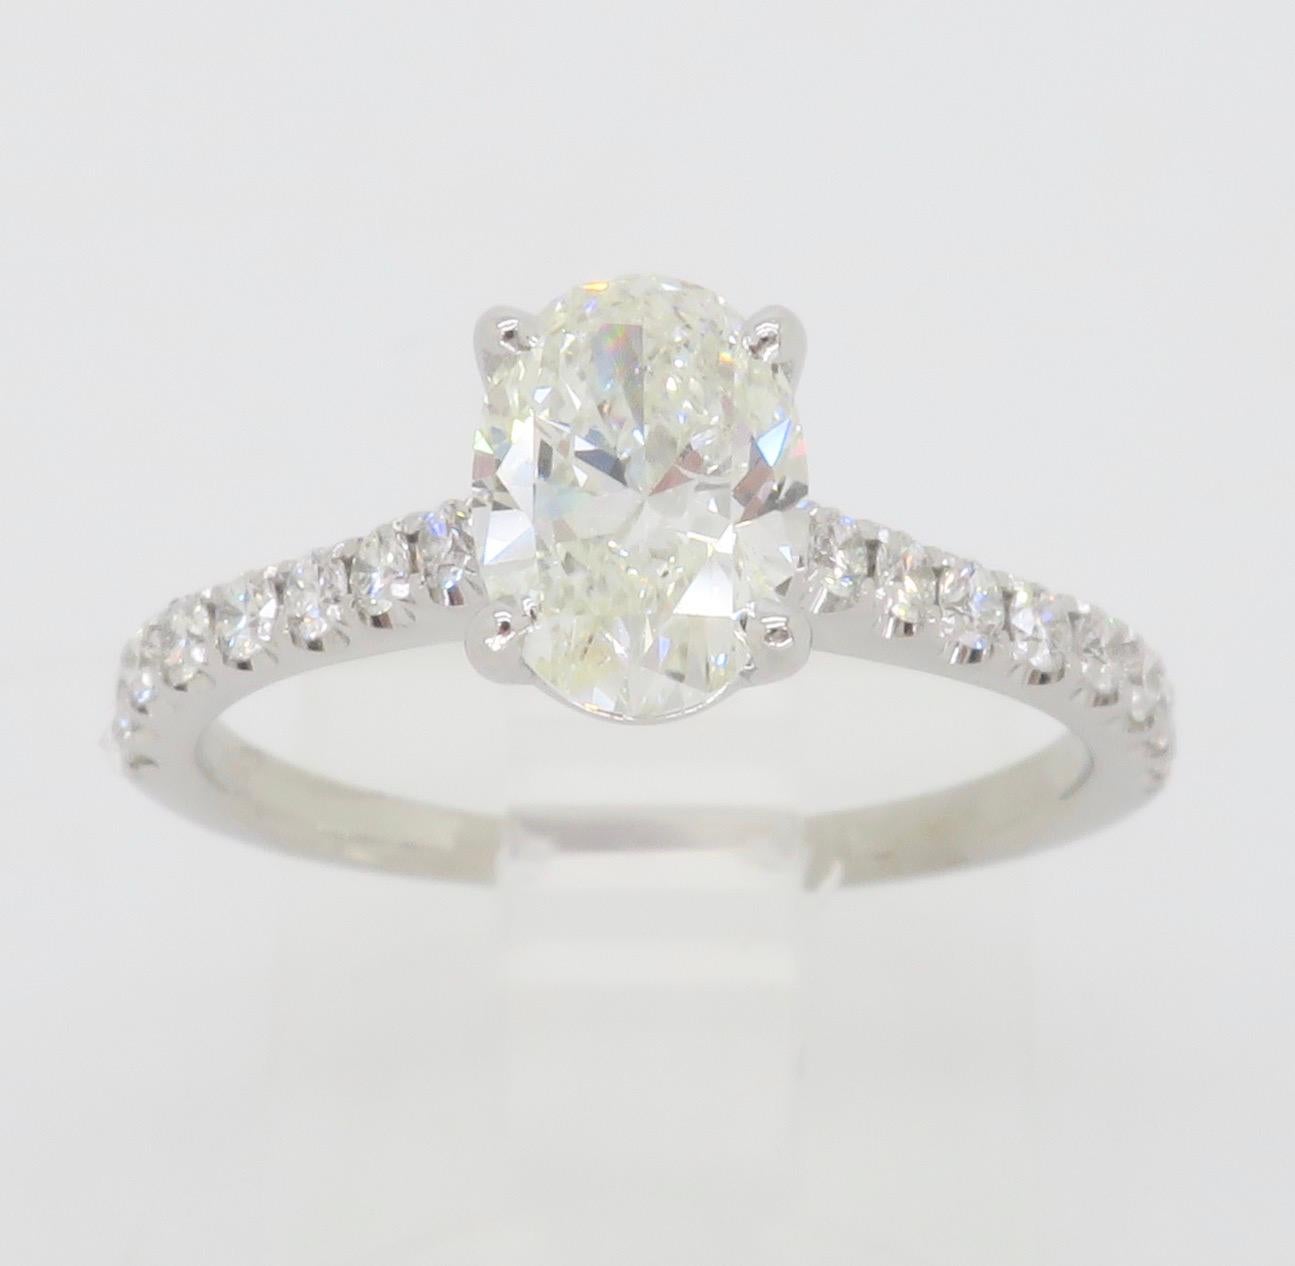 Simon G Diamond Engagement Ring in 18k White Gold For Sale 3